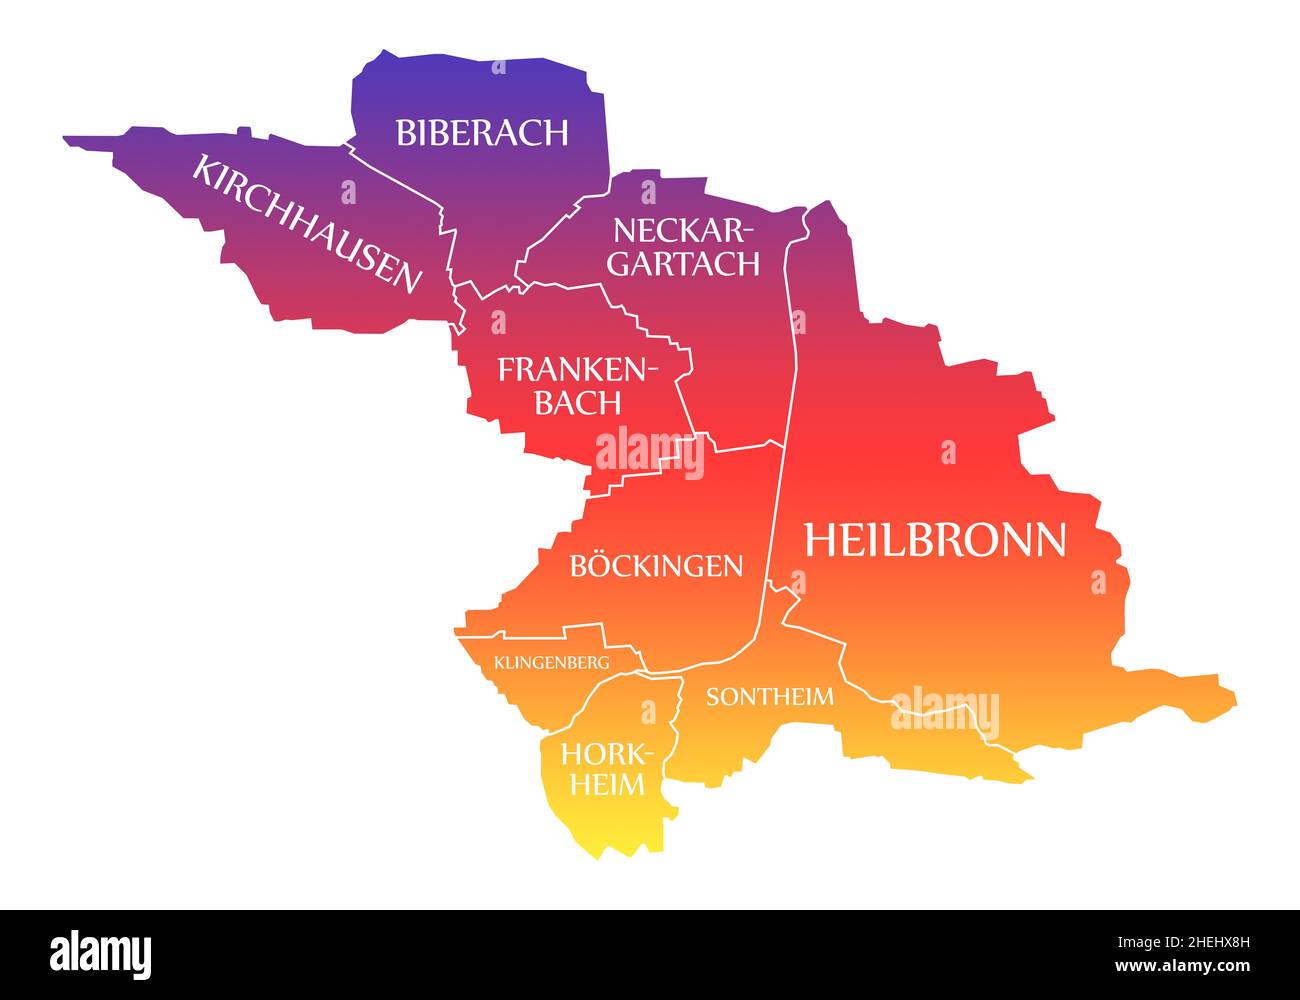 Heilbronn City Map Germania DE etichettato arcobaleno colorato illustrazione Foto Stock